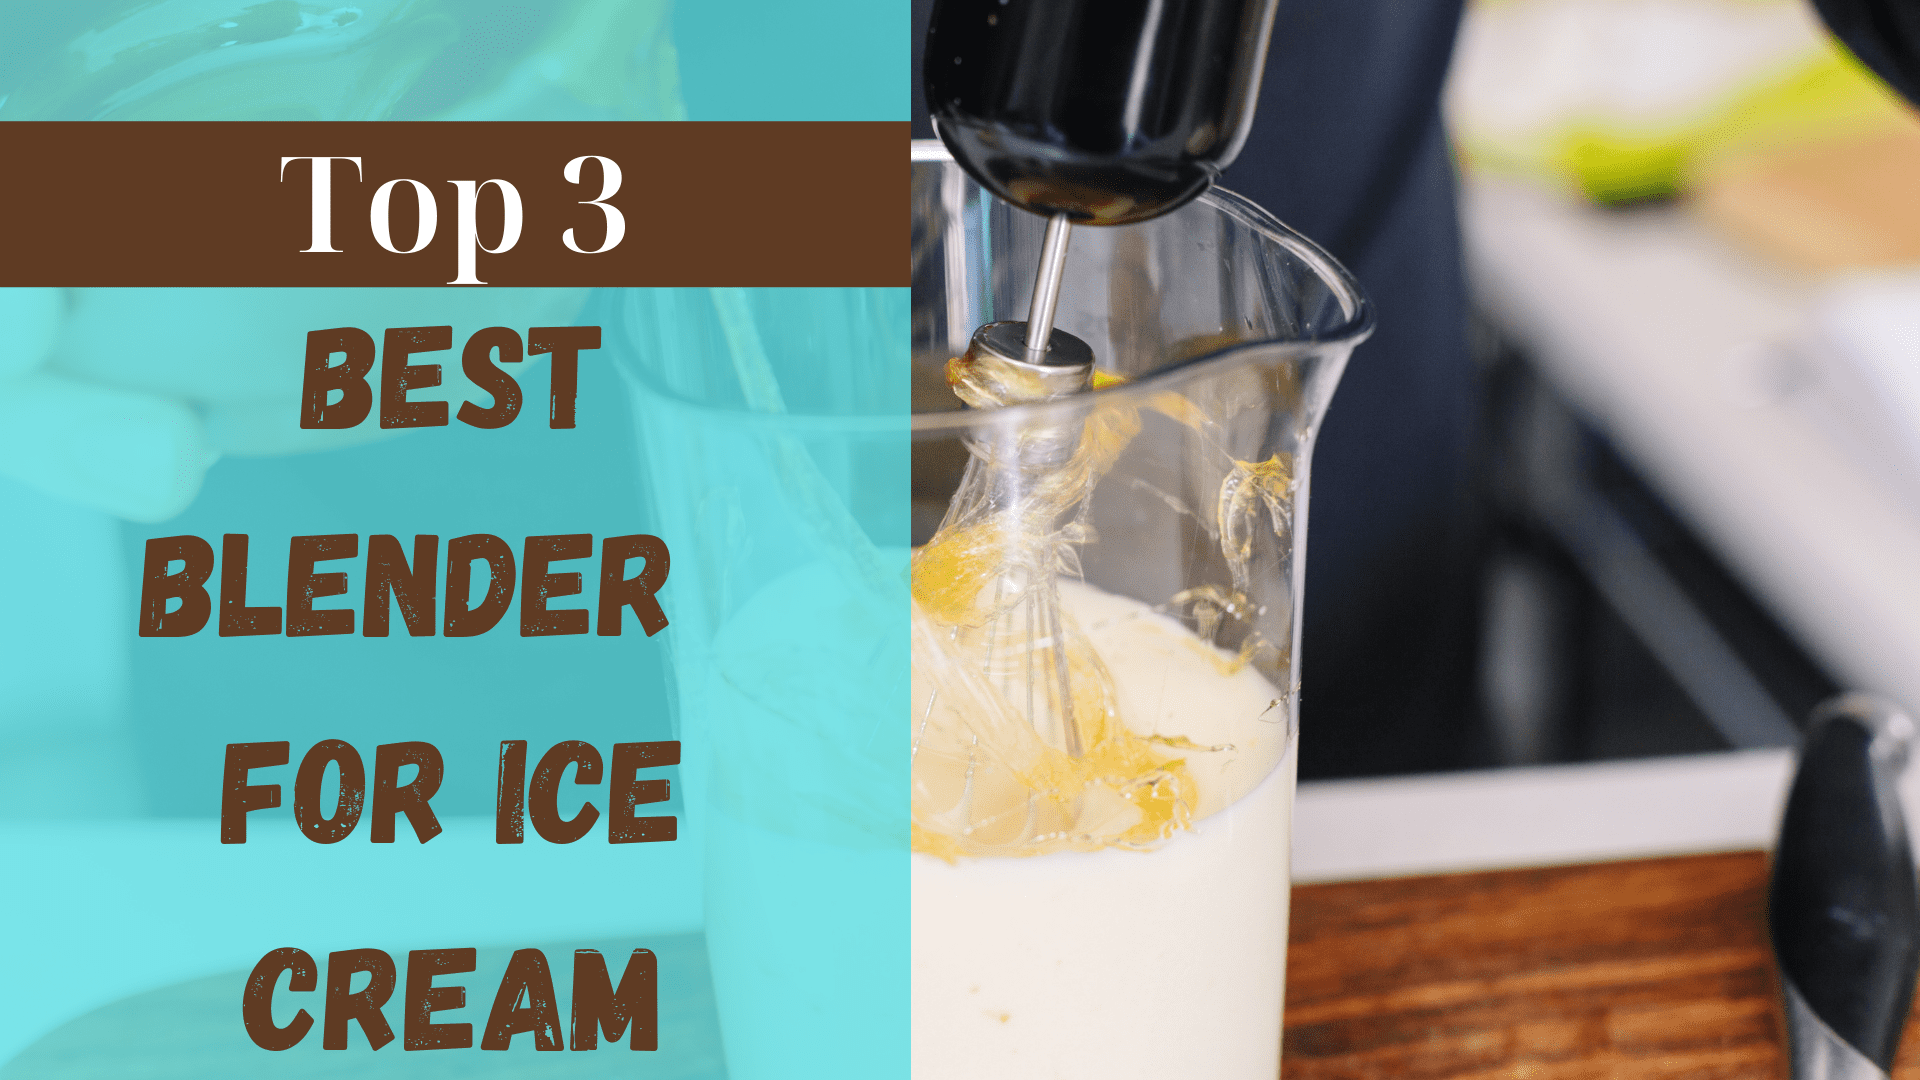 Best blender for Ice cream